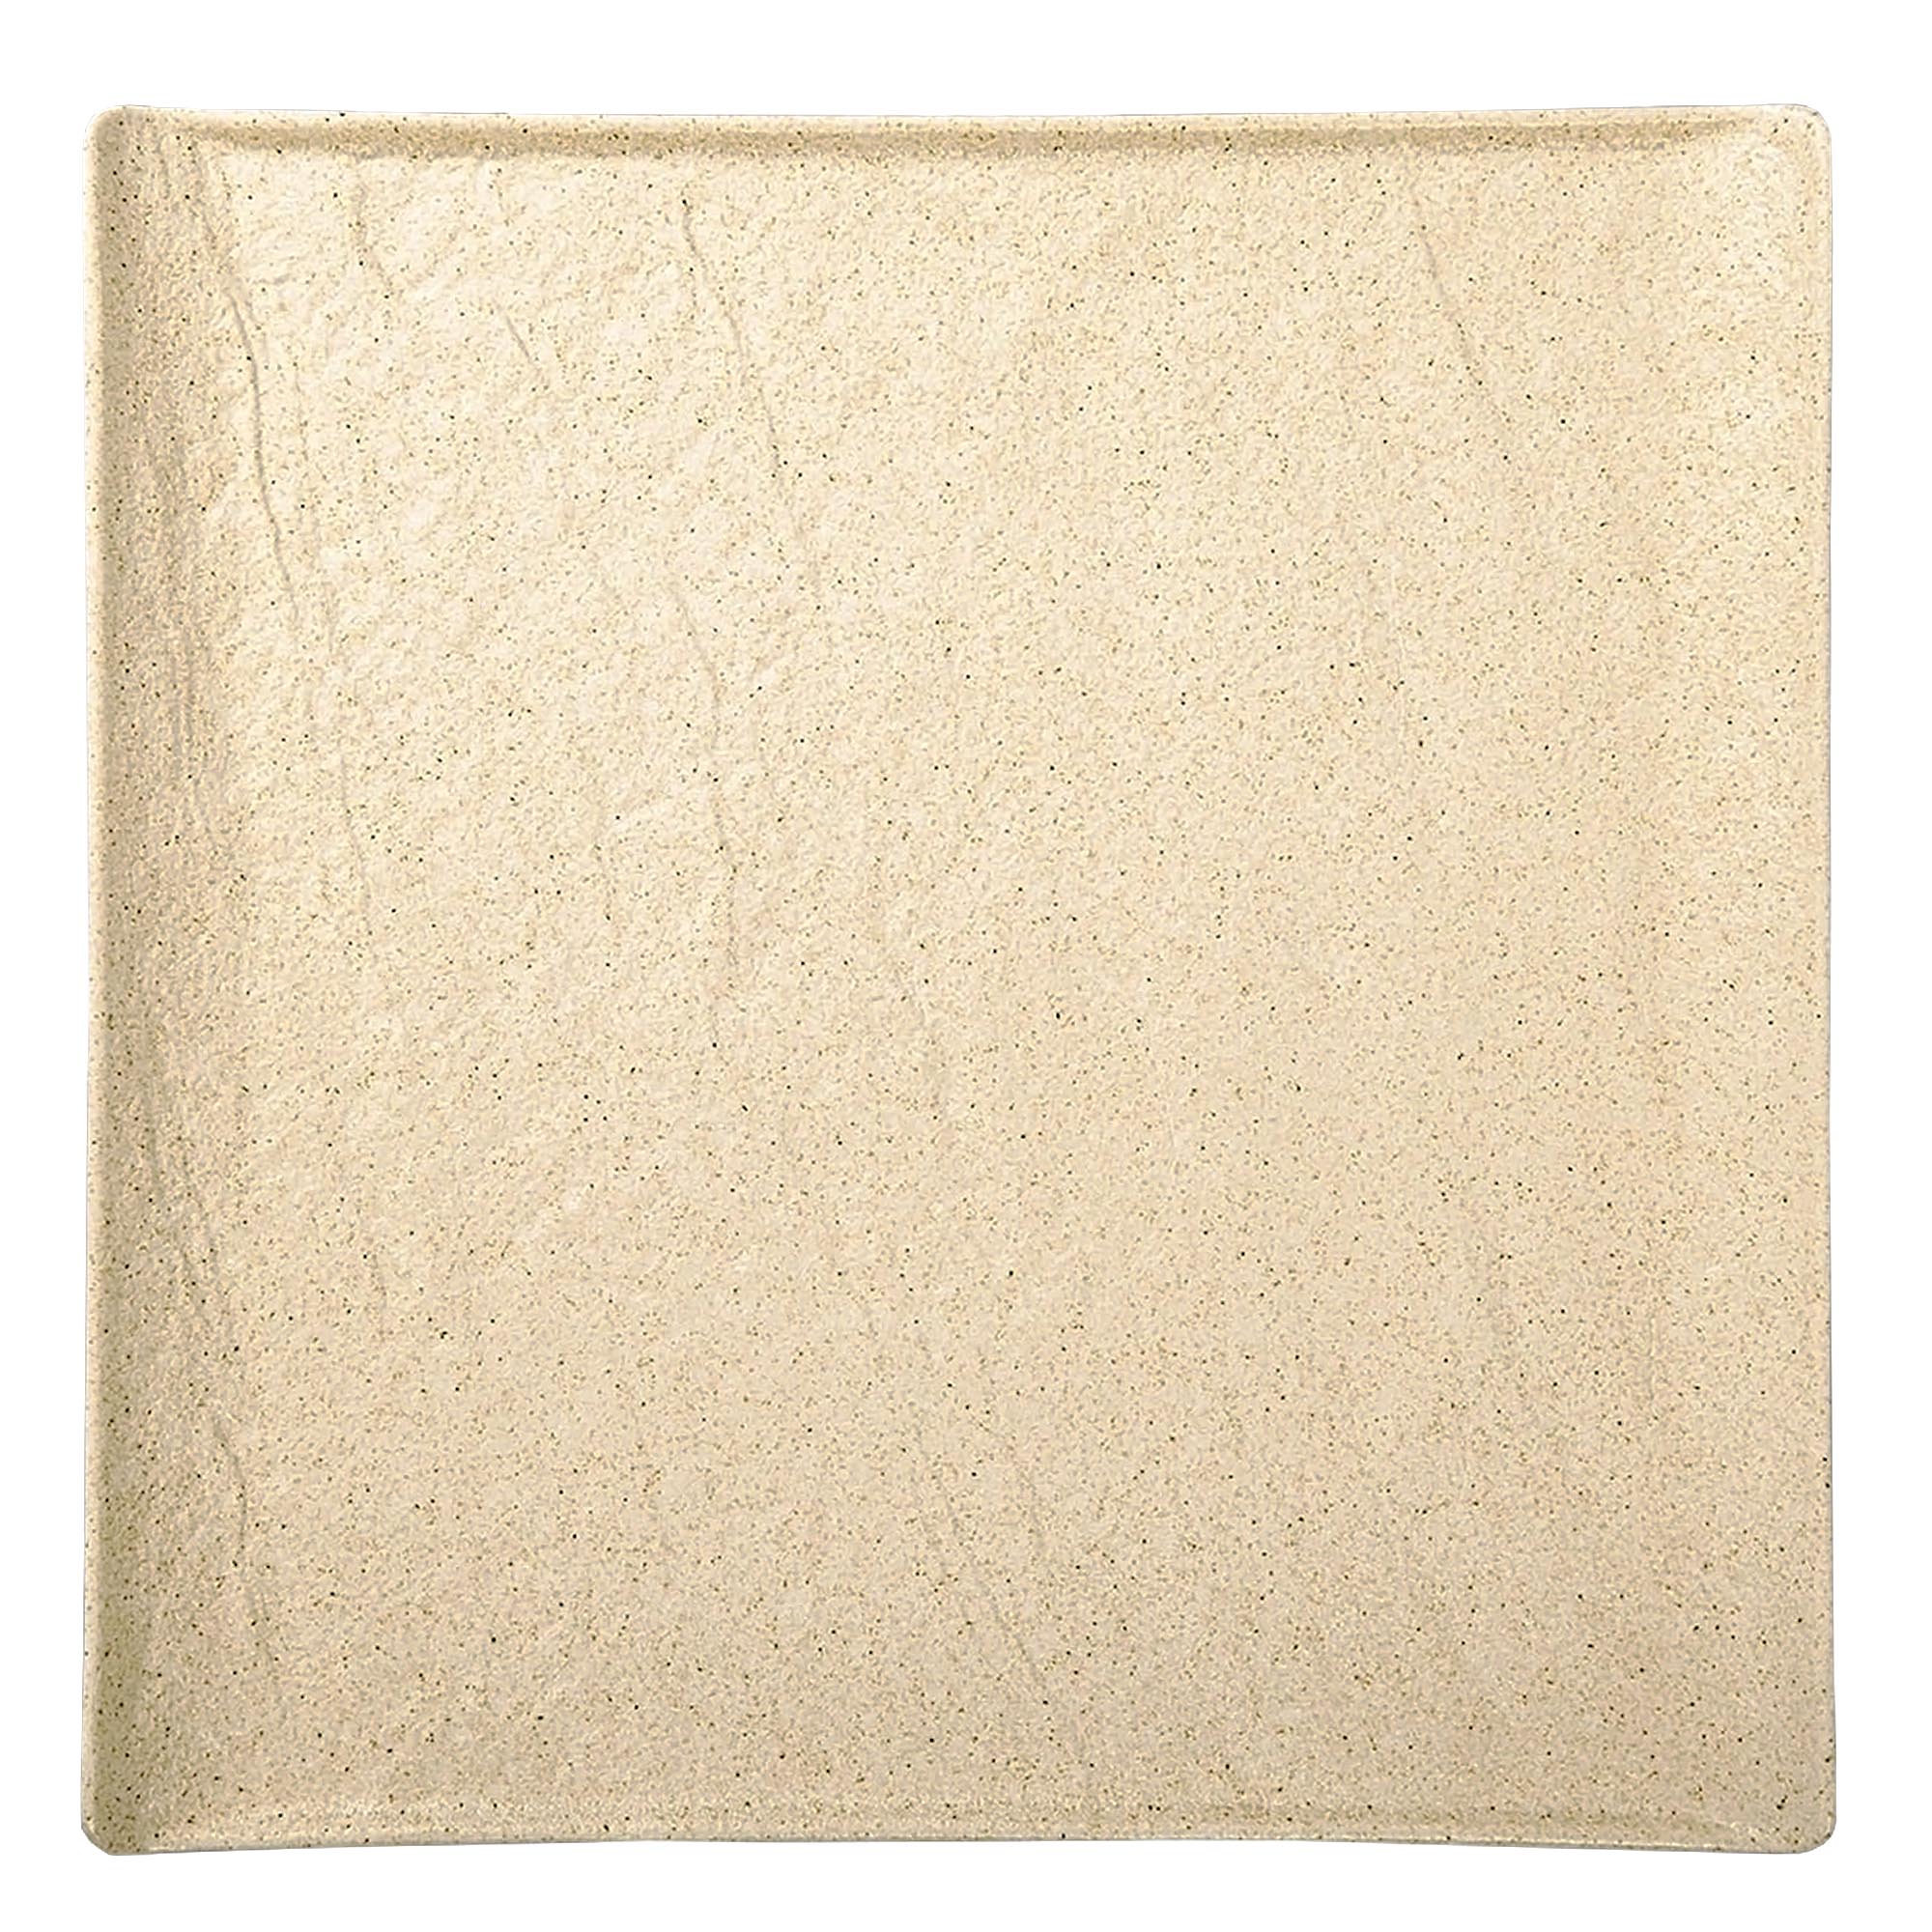 Тарелка квадратная Wilmax SandStone фарфор 27х27 см тарелка wilmax sandstone фарфор 25 см